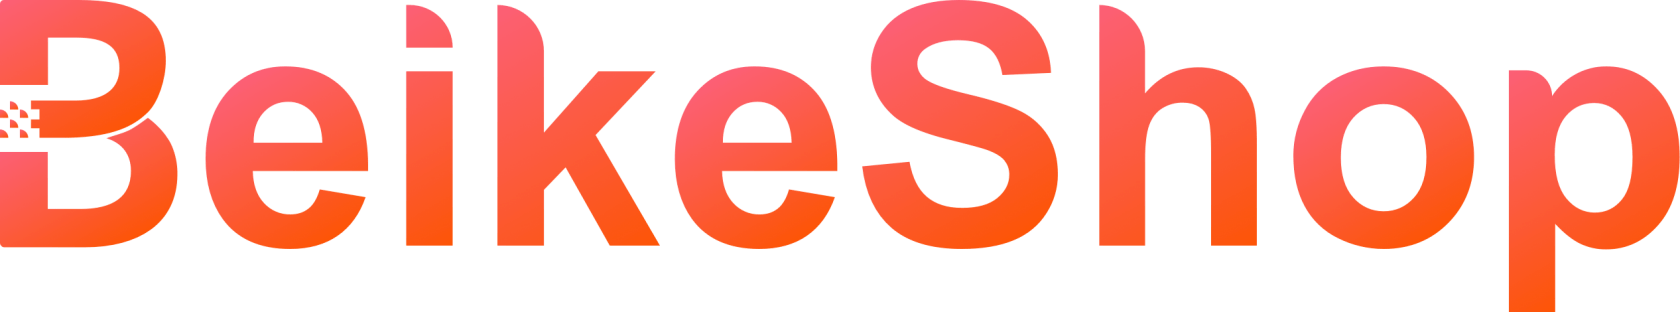 beikeshop_logo